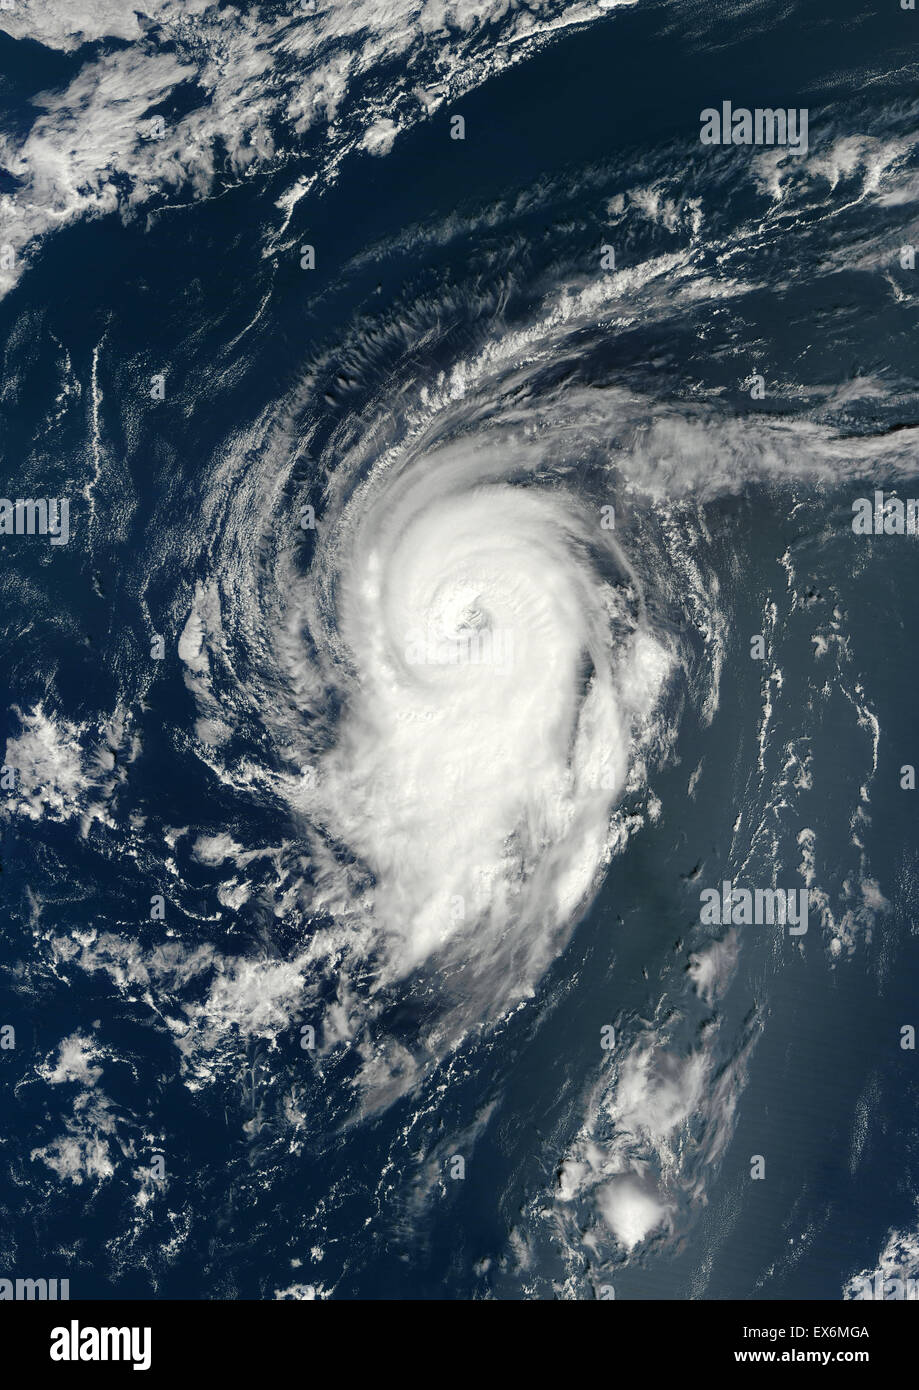 Satellite view of Hurricane Michael over the Atlantic Ocean. Image taken on September 9, 2012. Stock Photo